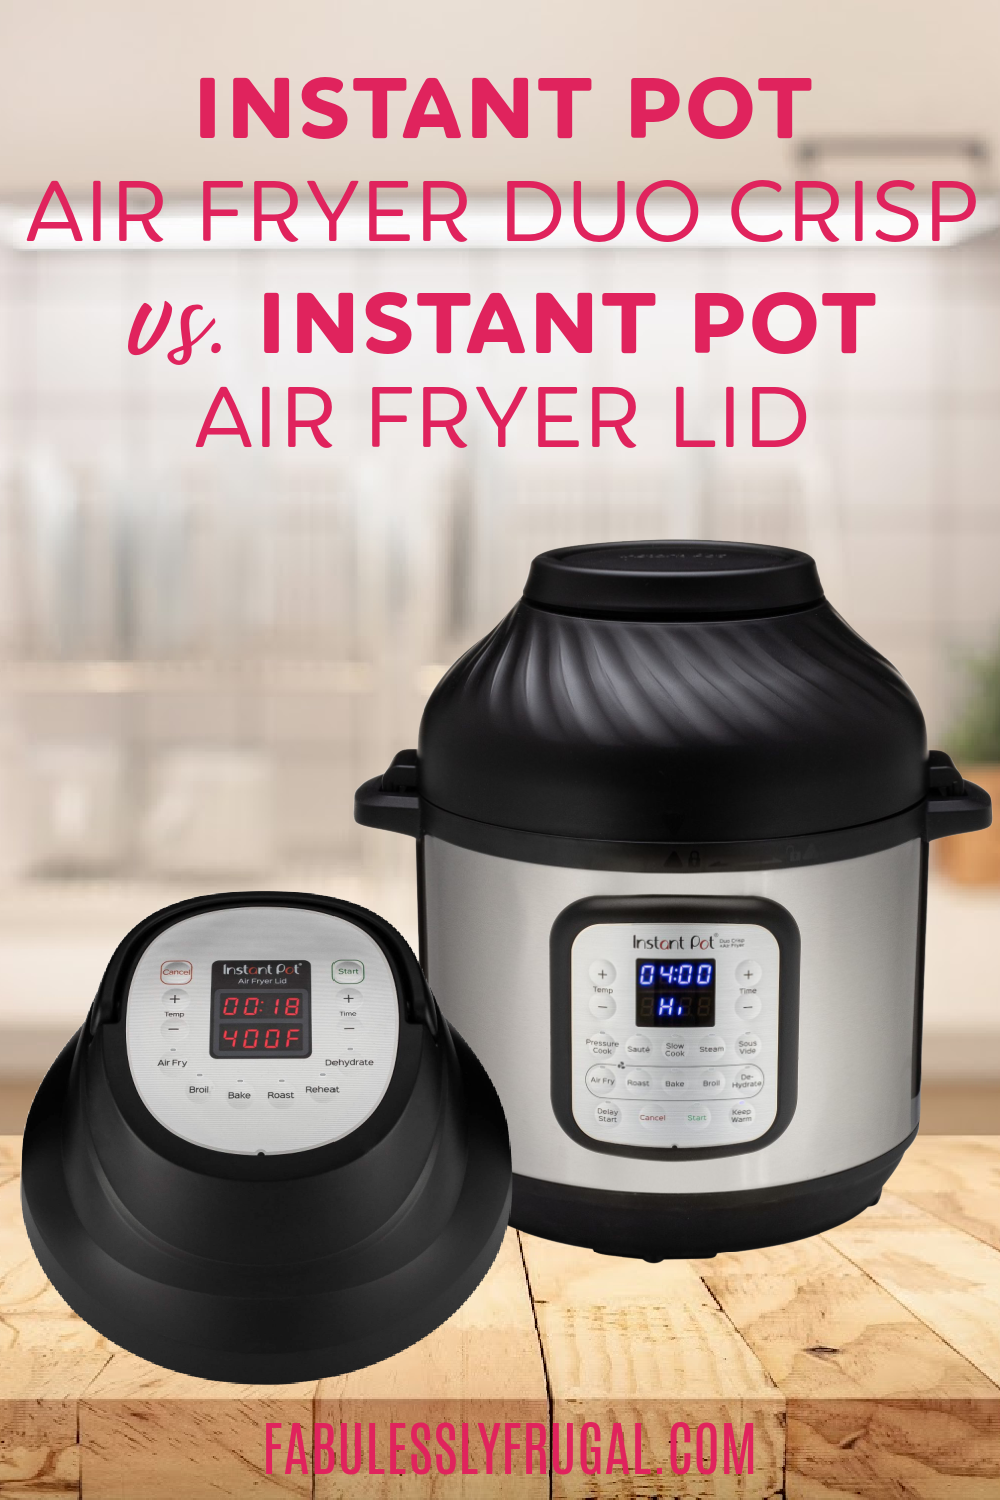 Instant Pot Duo Crisp Air Fryer Lid Review - Should You Buy It